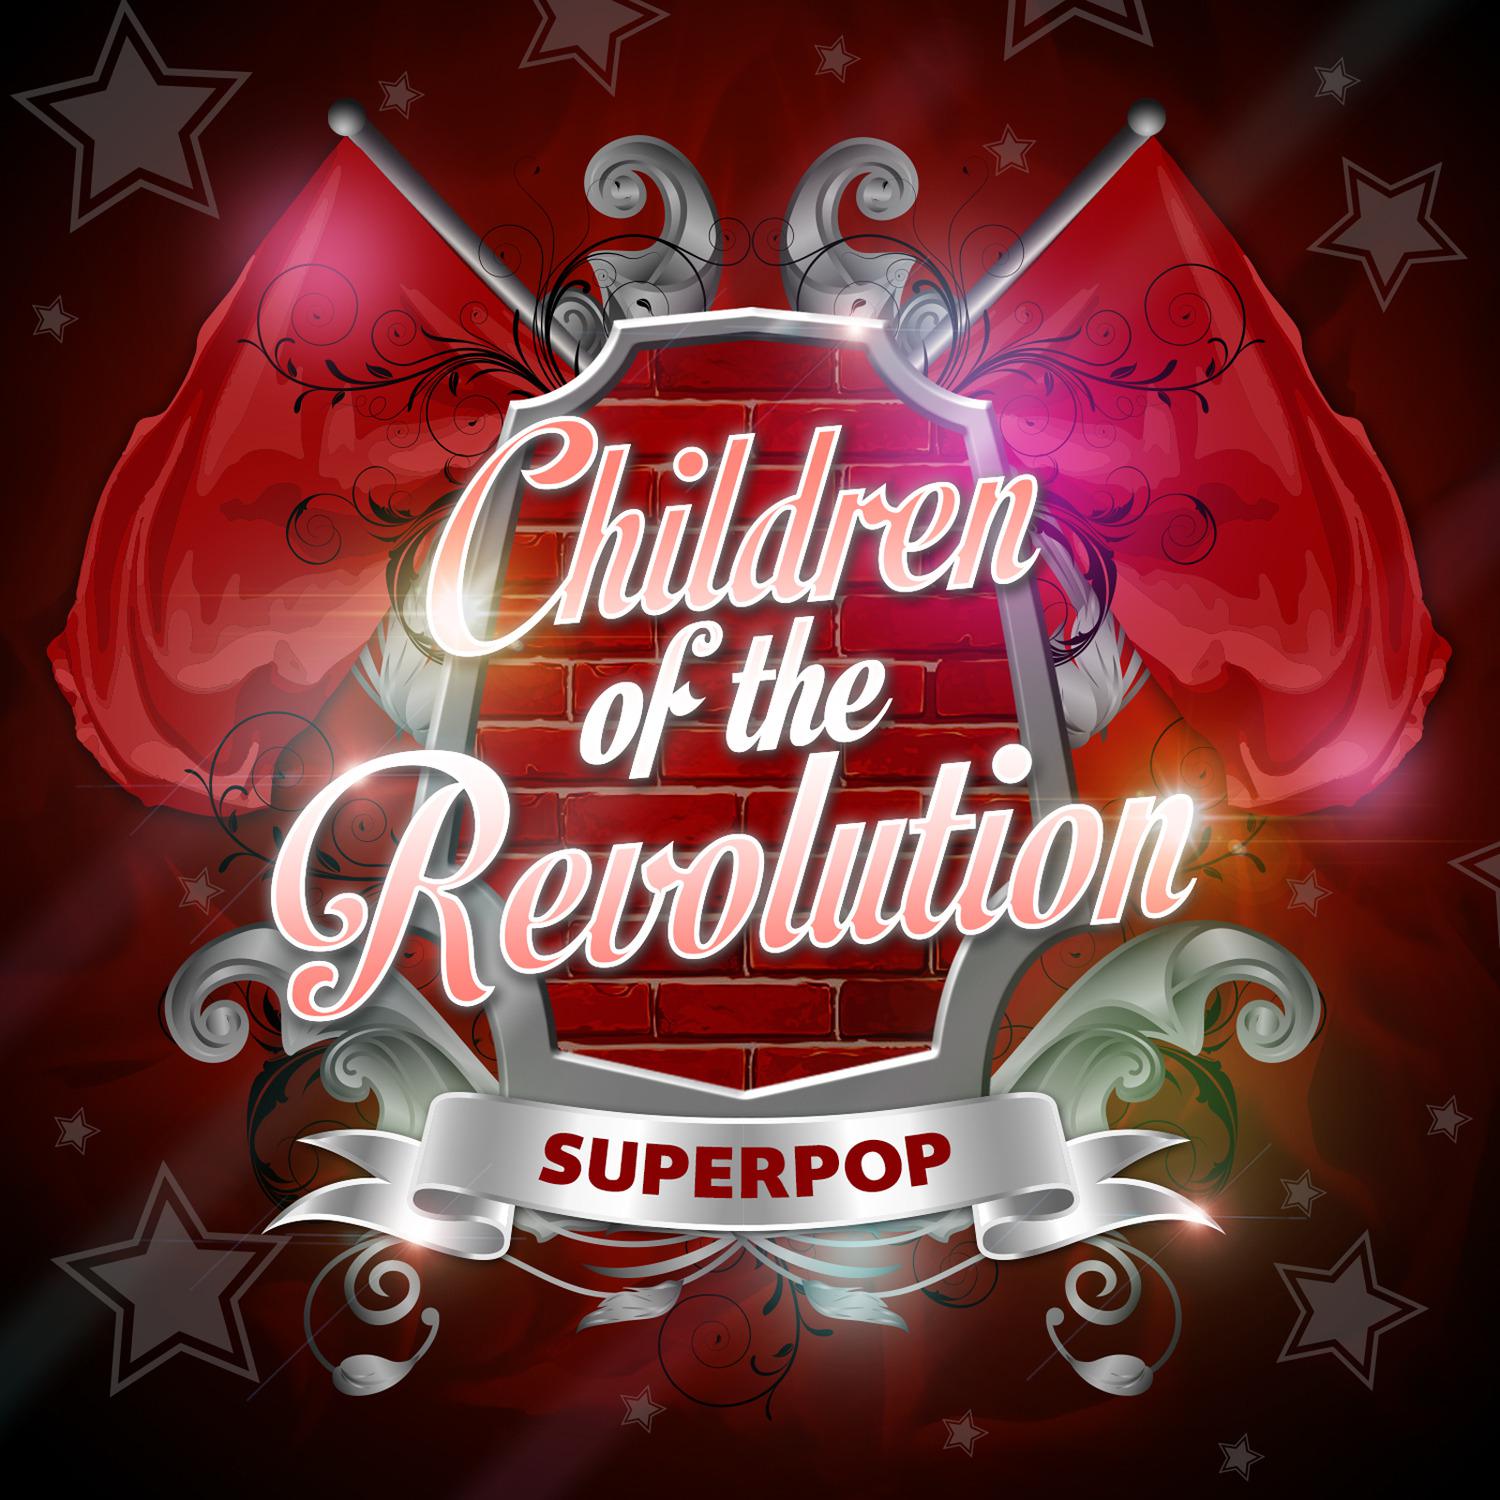 Superpop (Children of the Revolution)